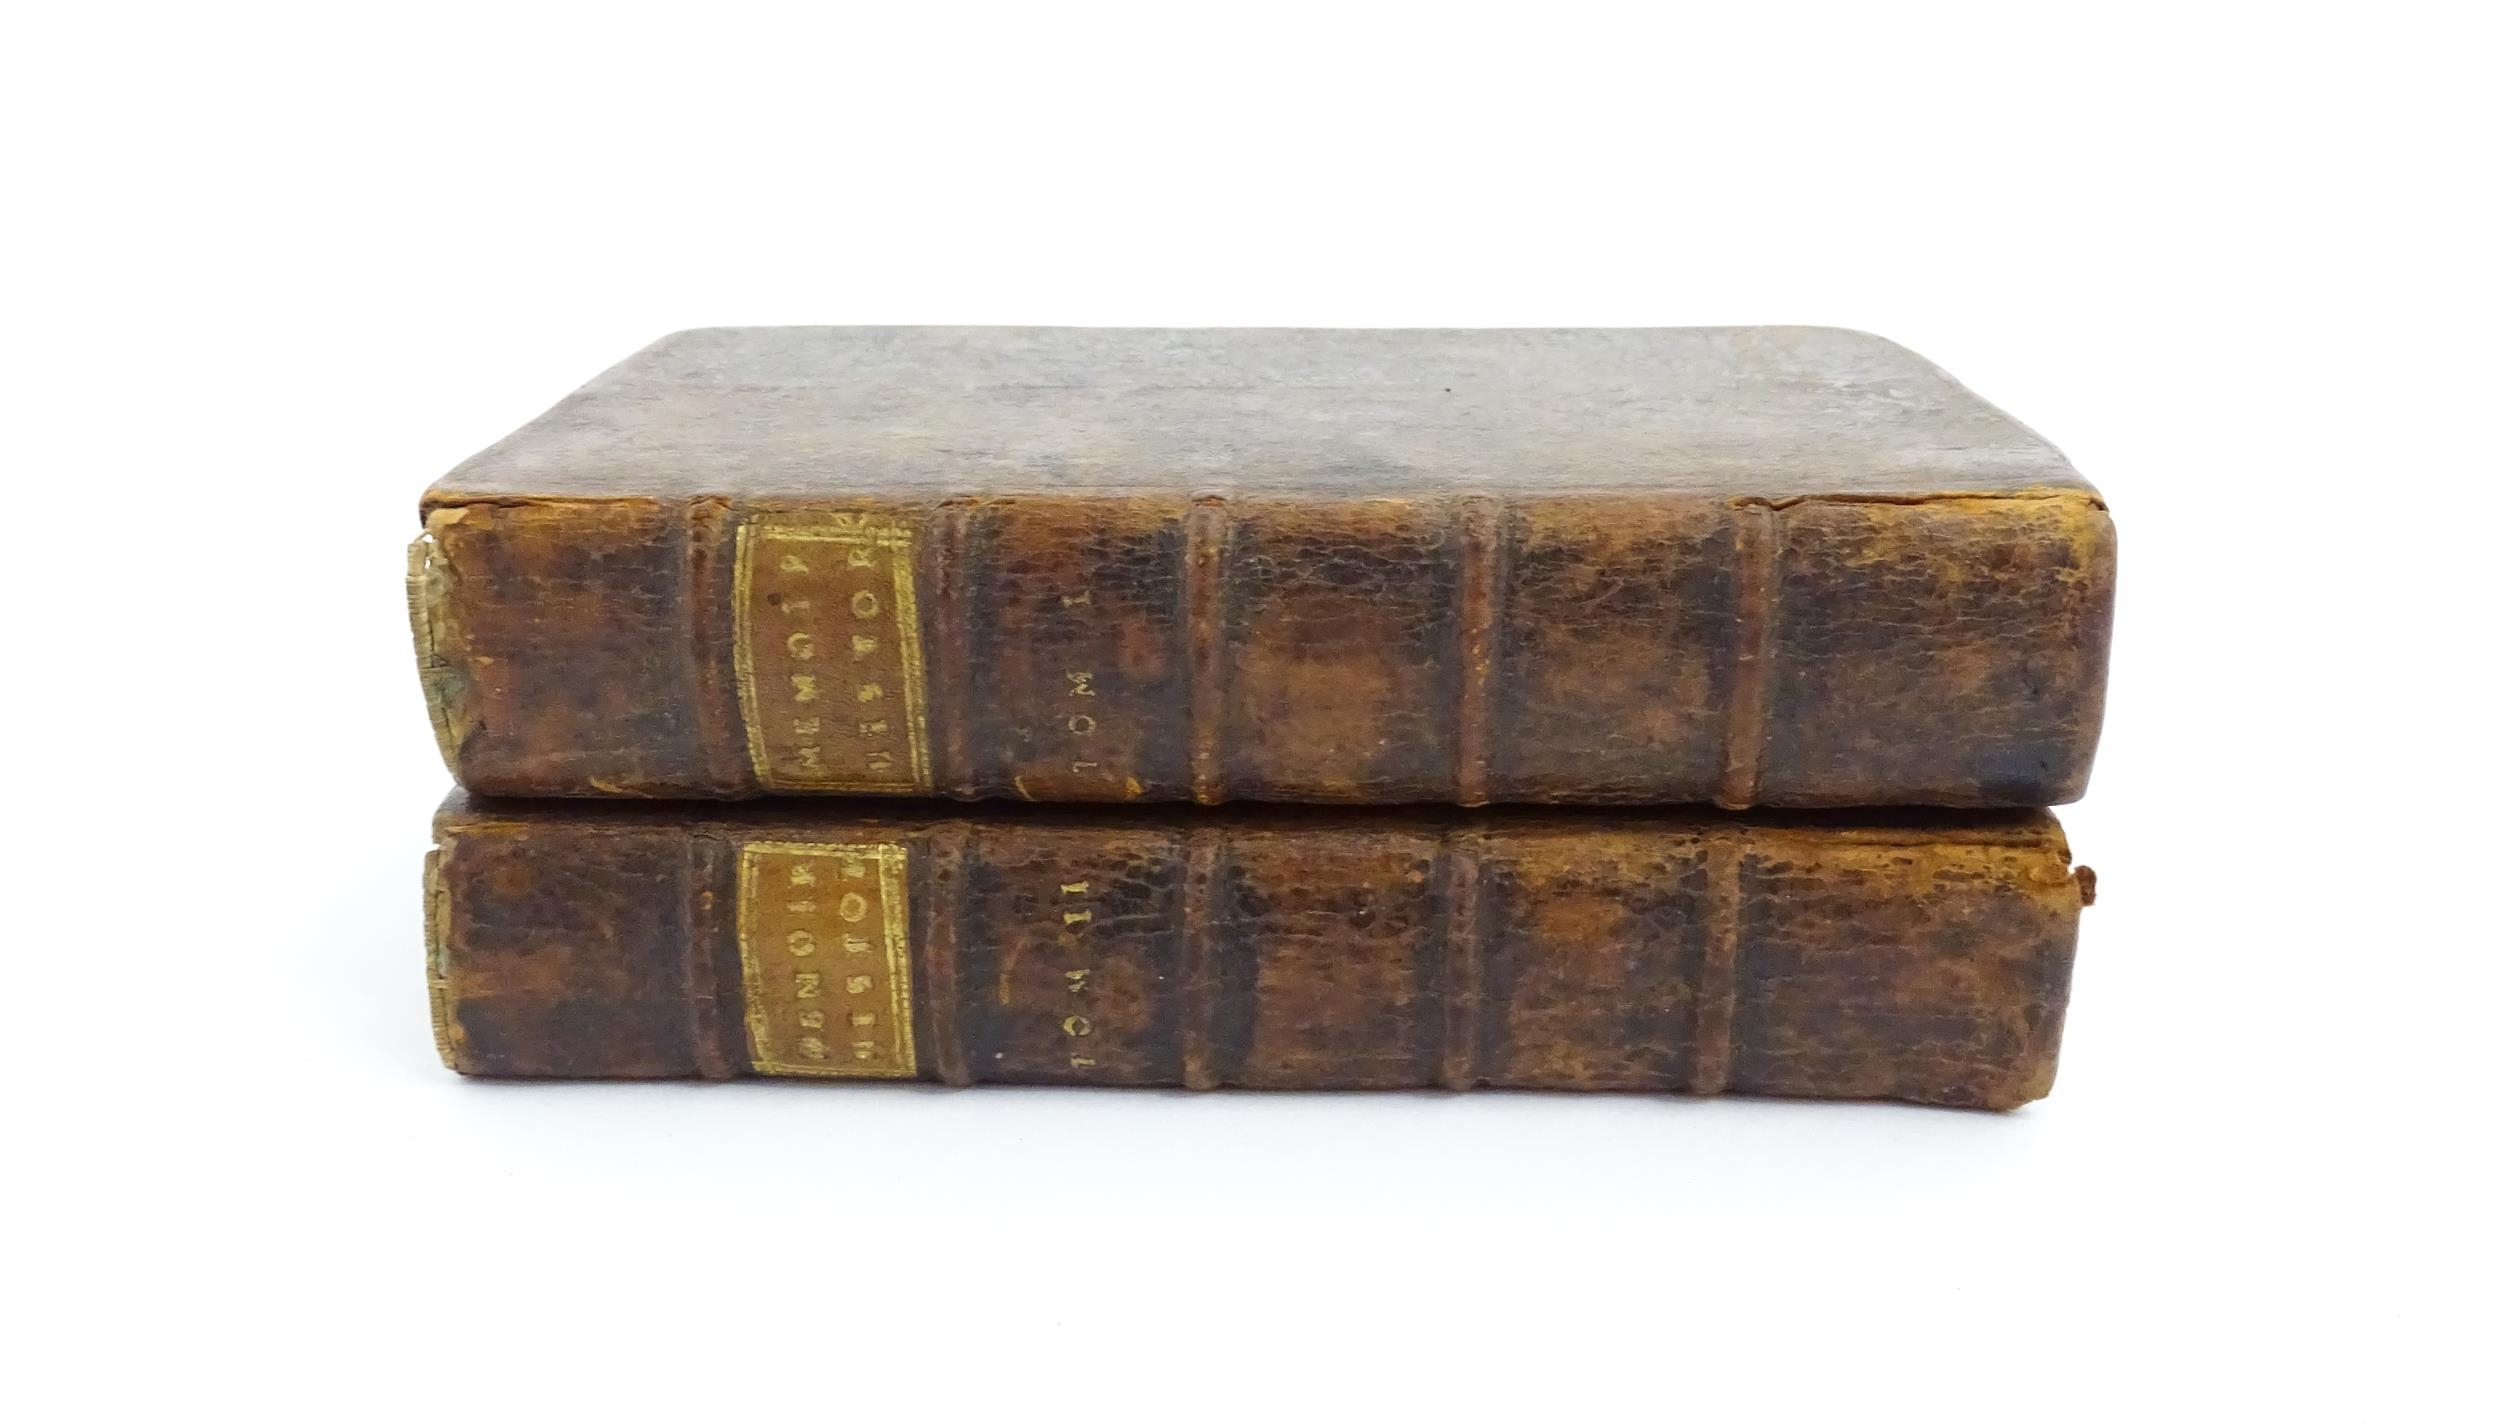 Books: Memoires Historiques, Politiques, Critiques et Litteraires, in two volumes, by Amelot de la - Image 3 of 7